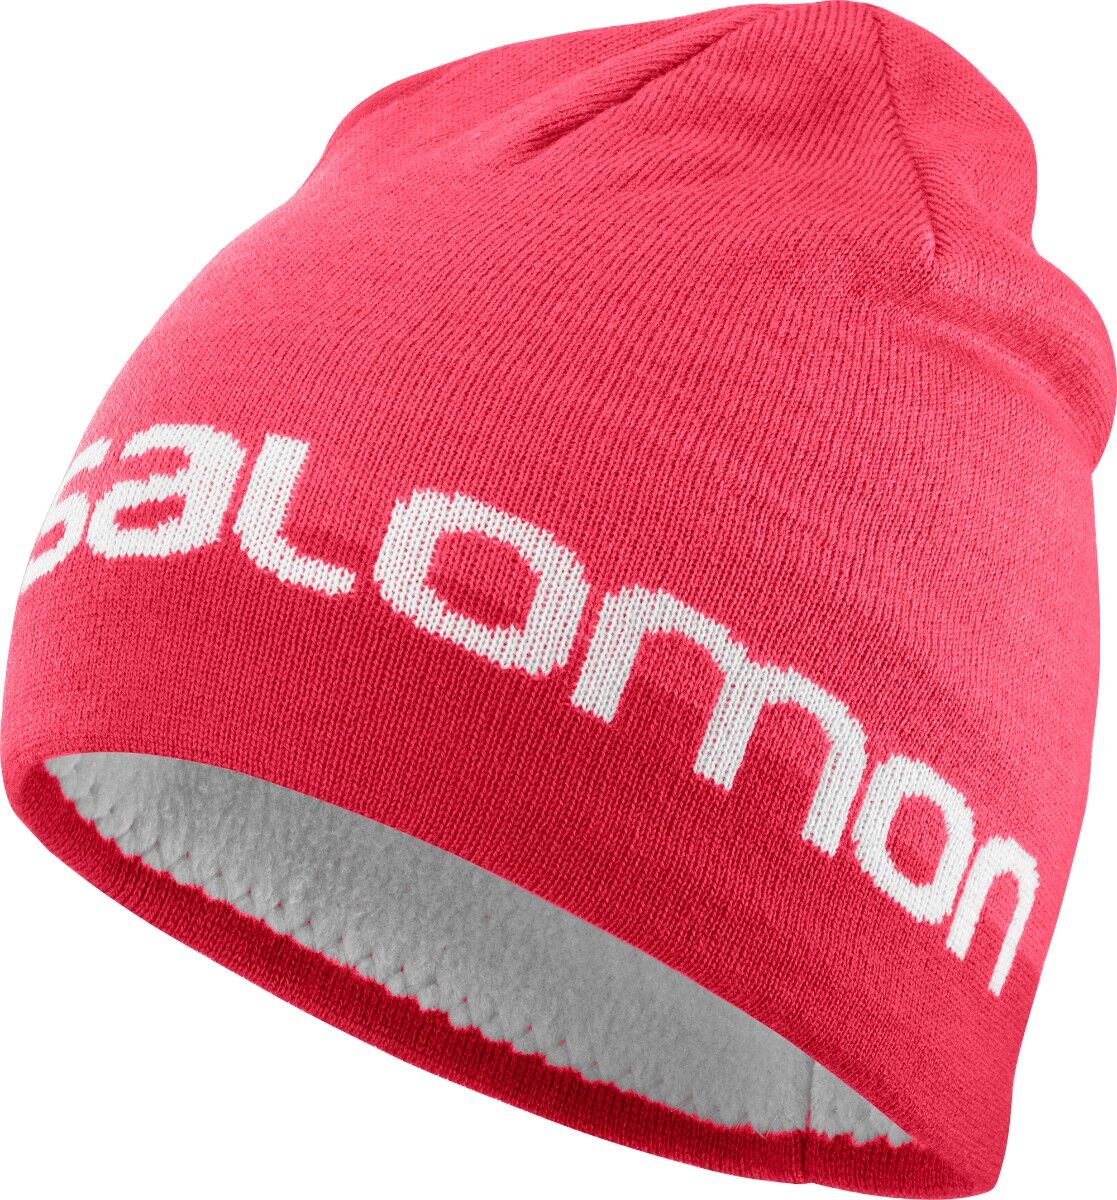 Salomon Graphic Beanie - Mütze